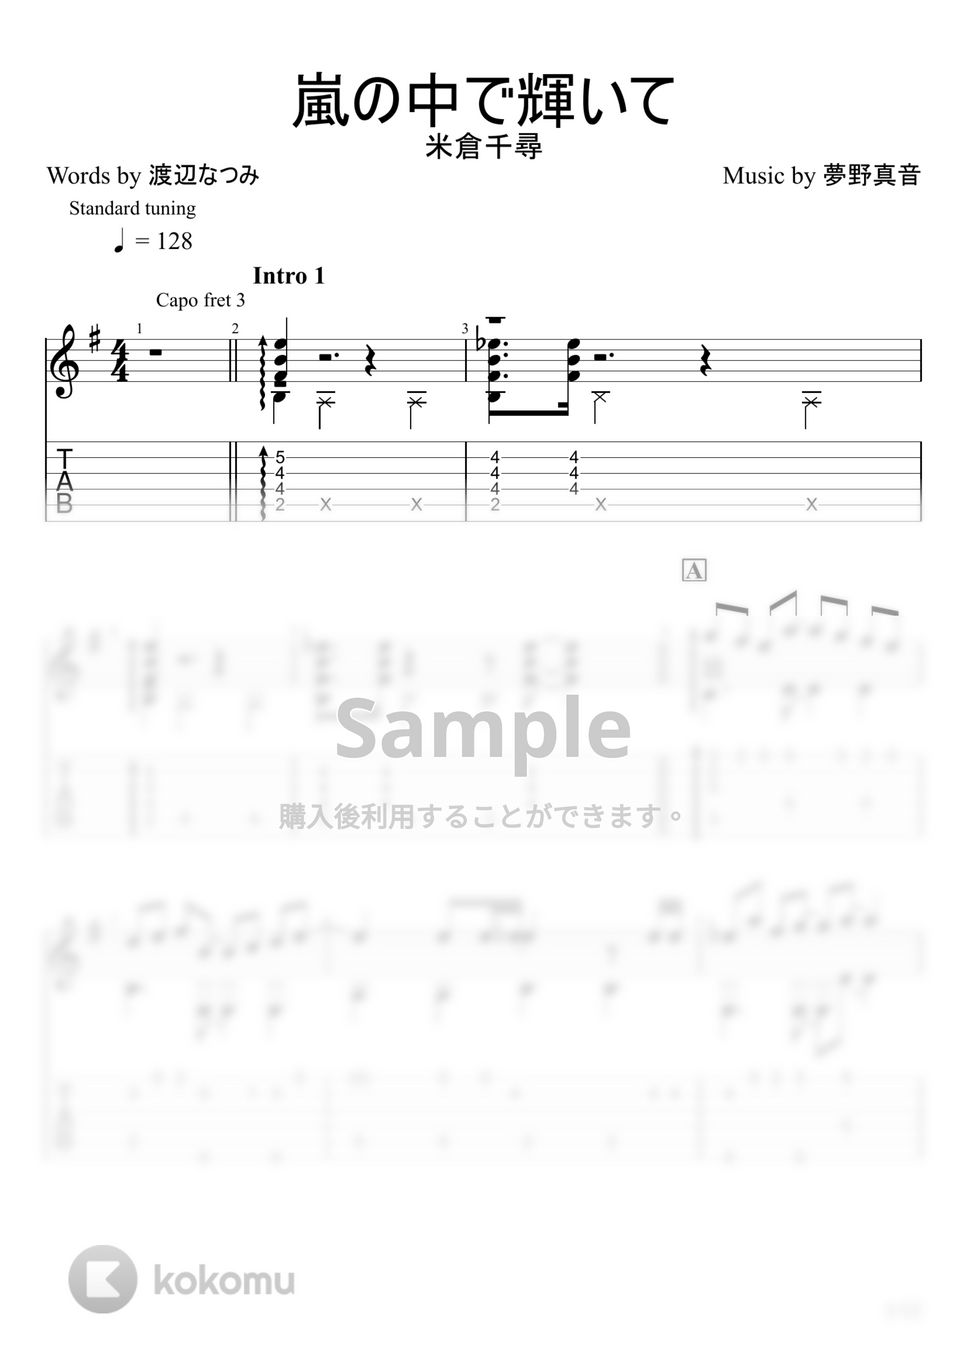 機動戦士ガンダム第08MS小隊 - 嵐の中で輝いて (ソロギター) by u3danchou